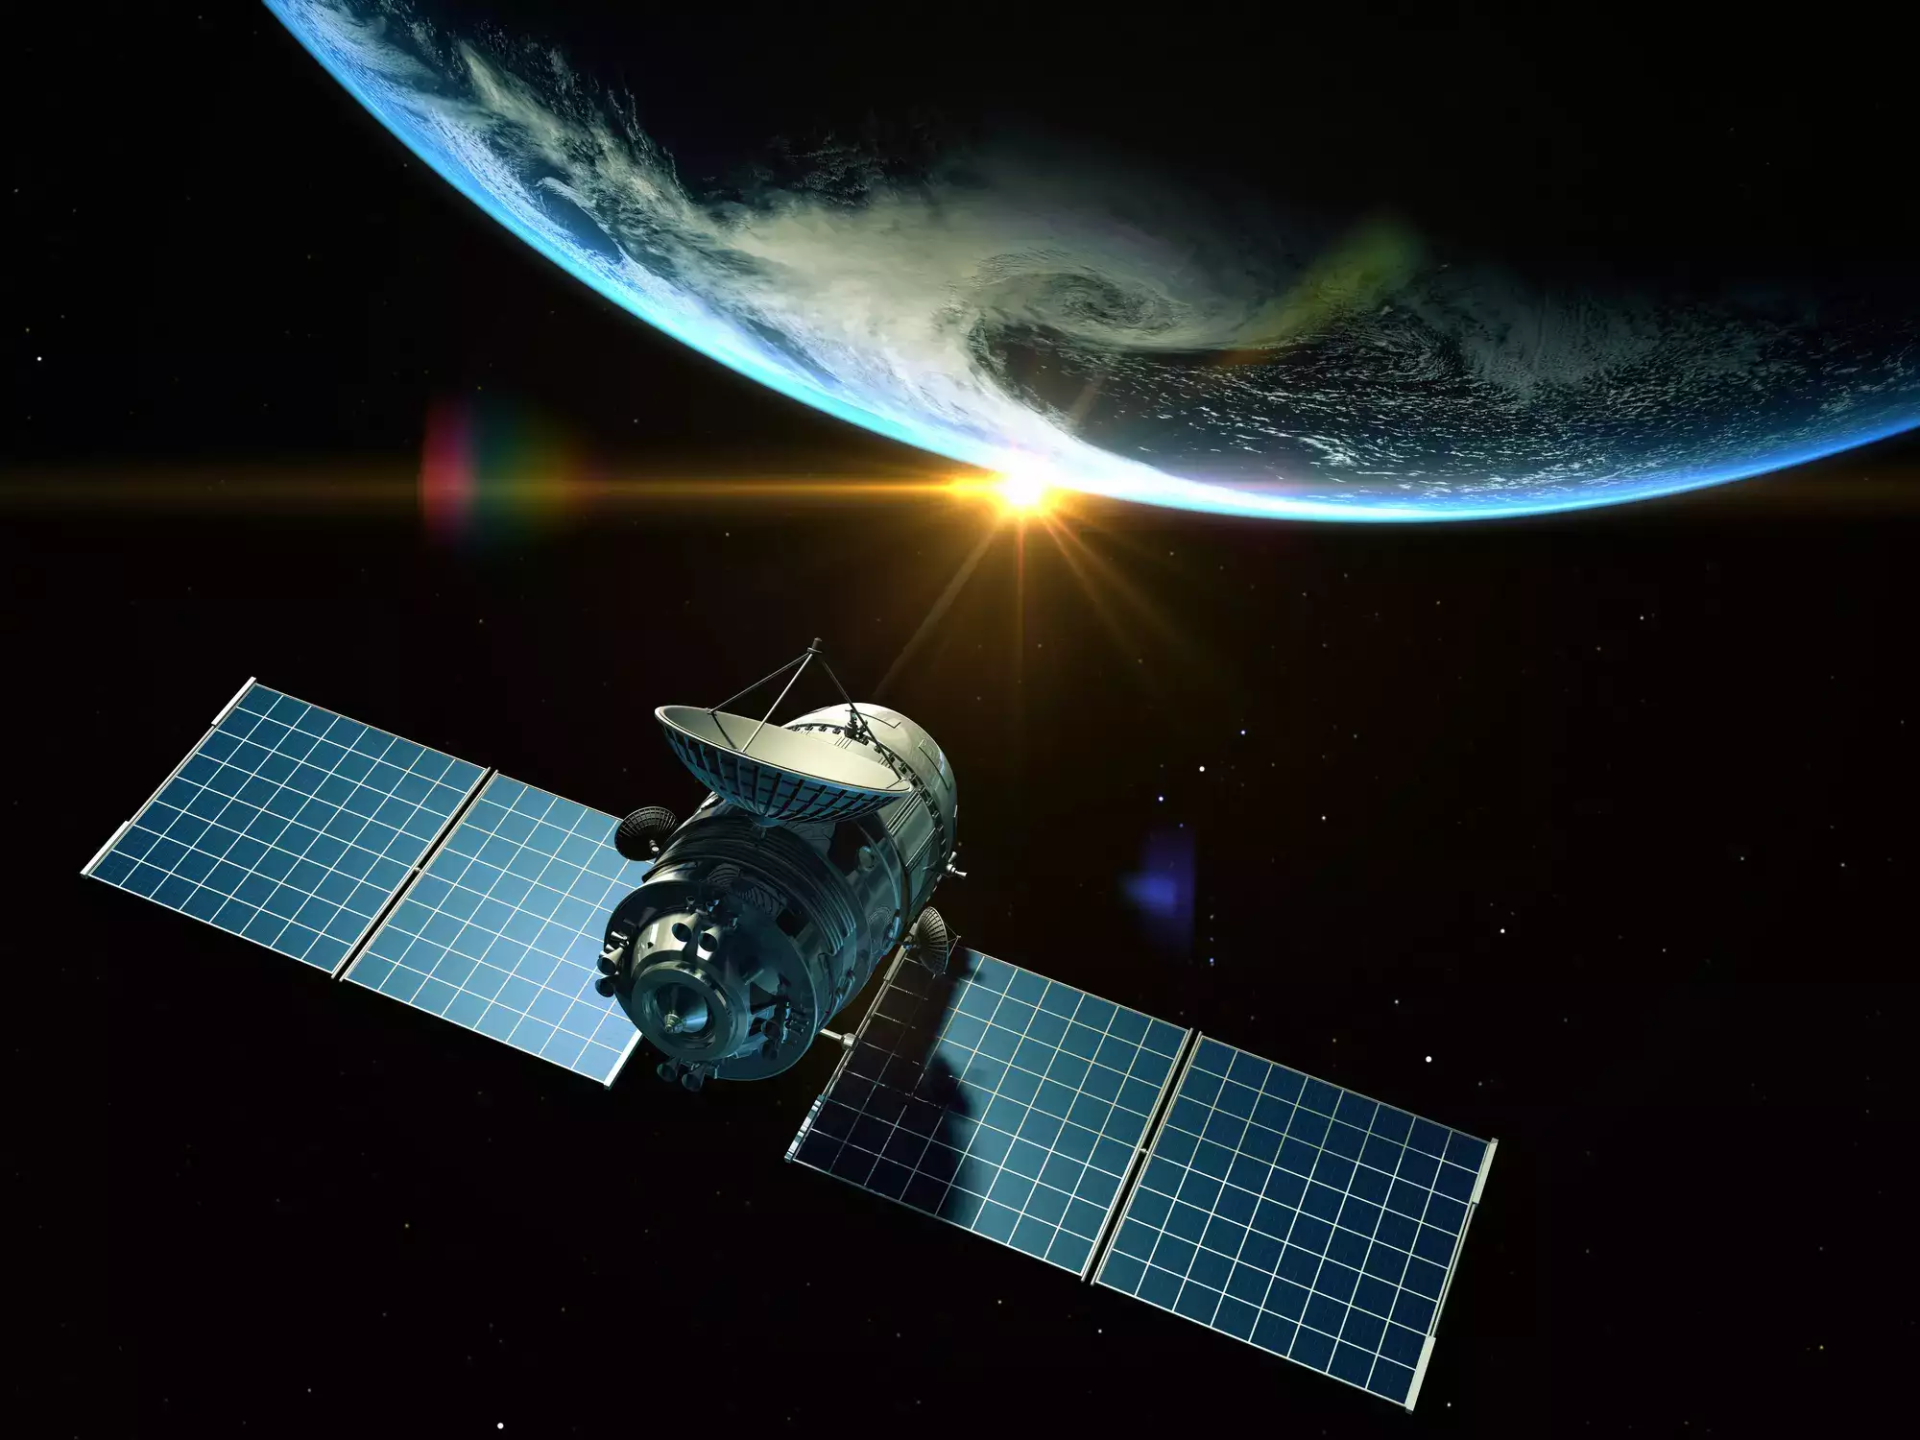 Chuyên gia Kaspersky cảnh báo những công ty dẫn đầu thị trường về công nghệ vệ tinh sẽ phải đối mặt với việc bị khai thác các lỗ hổng nghiêm trọng